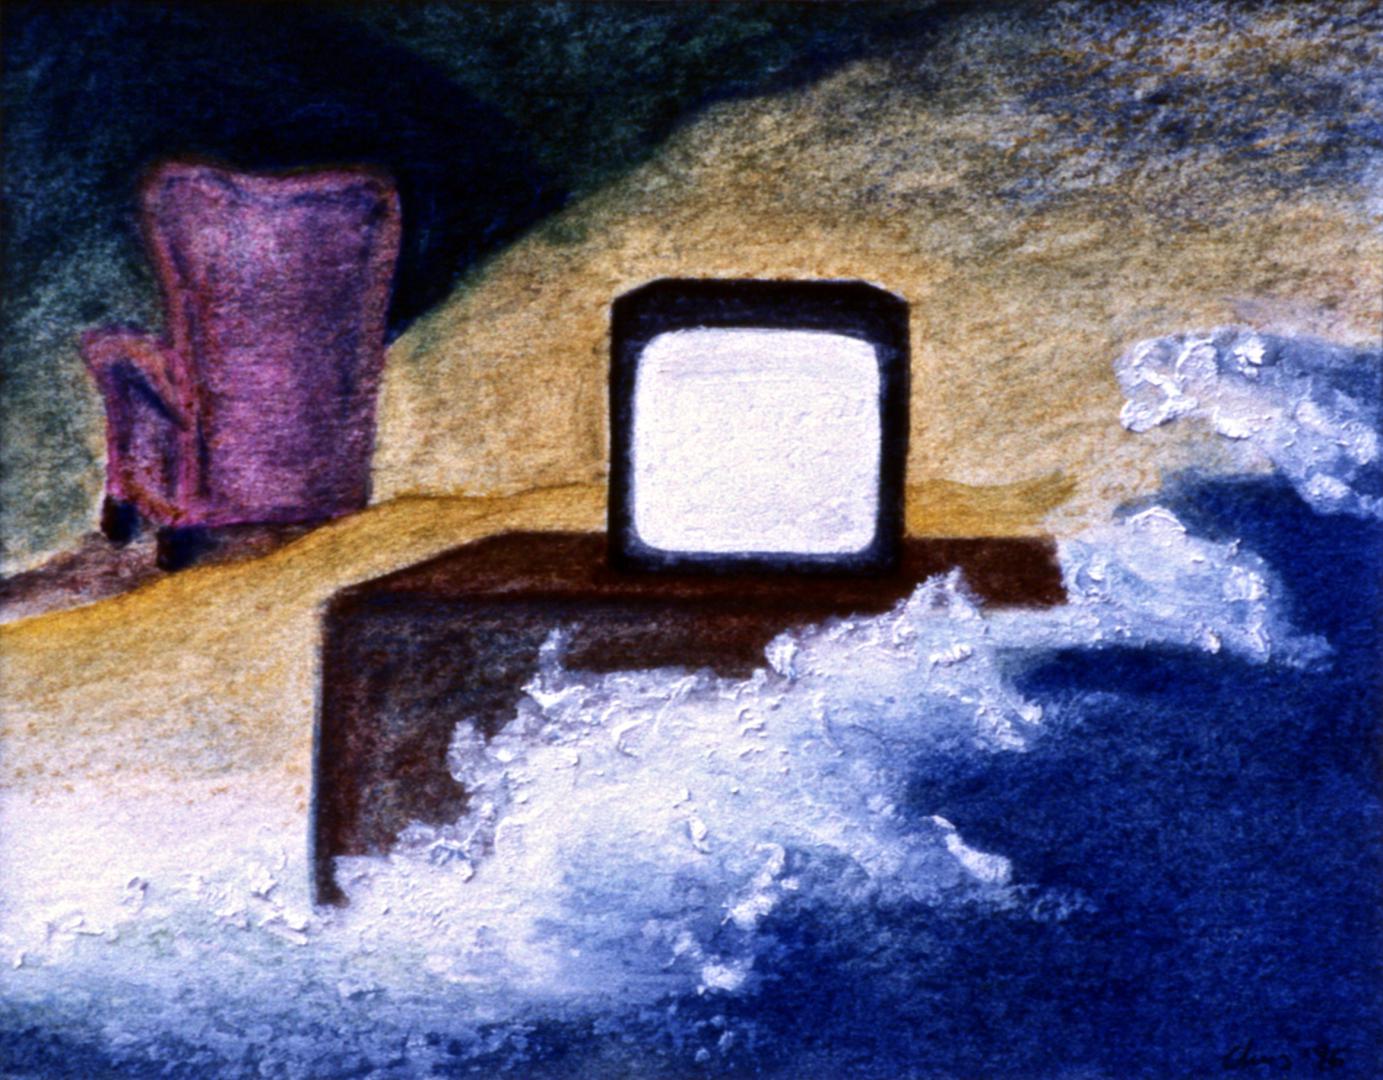 Ruido de fondo / Bruit de fond - 13'5 x 17'5 cm, 1996